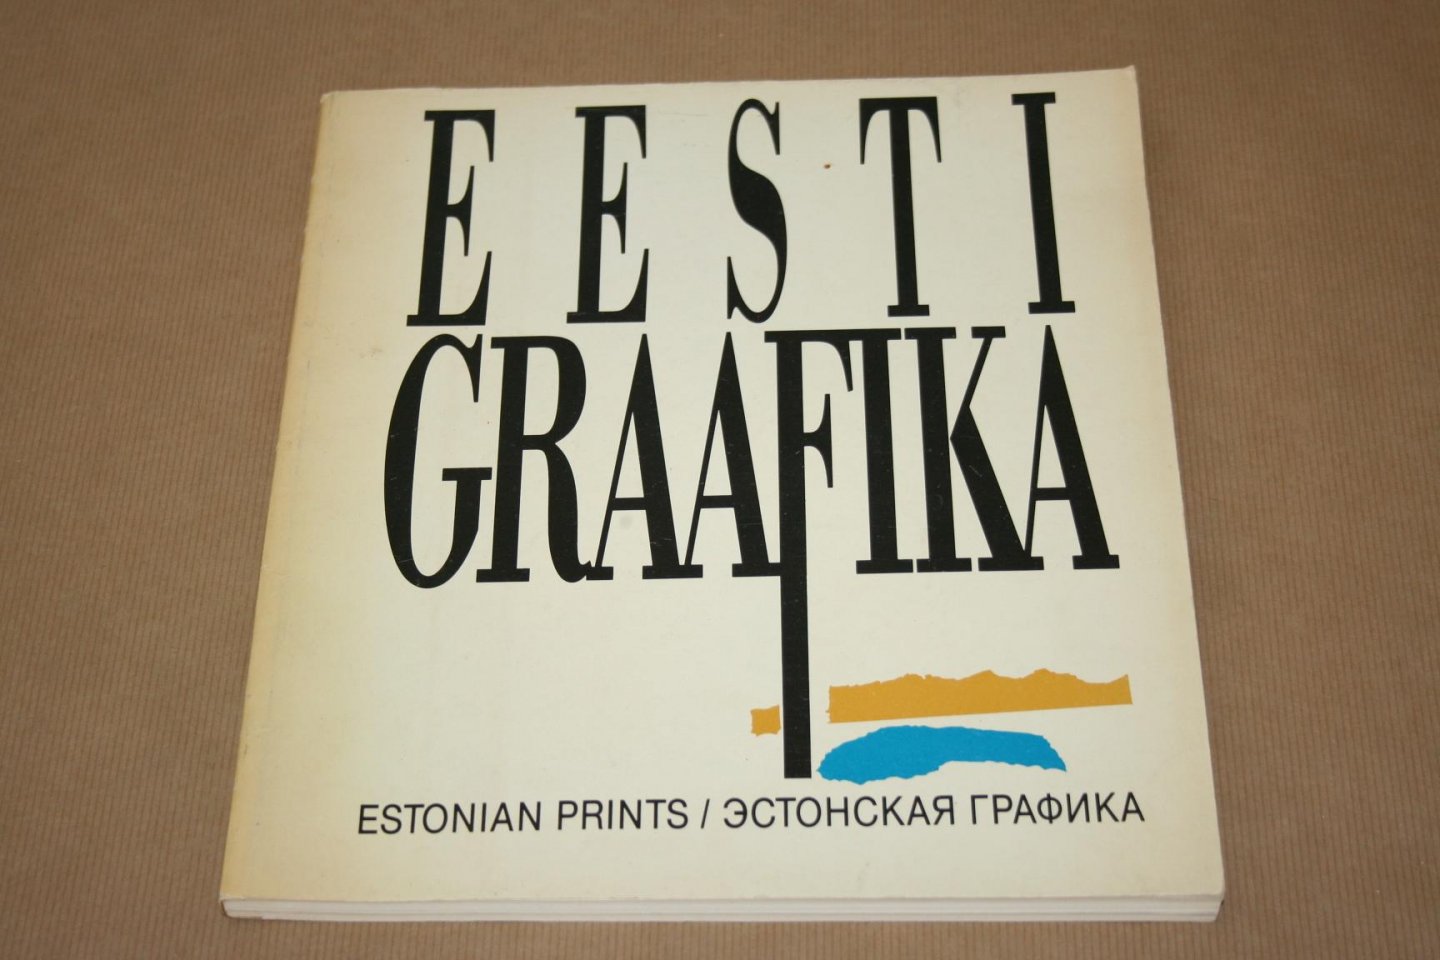  - Eesti Grafika 1982-1989 --  Estonian Prints